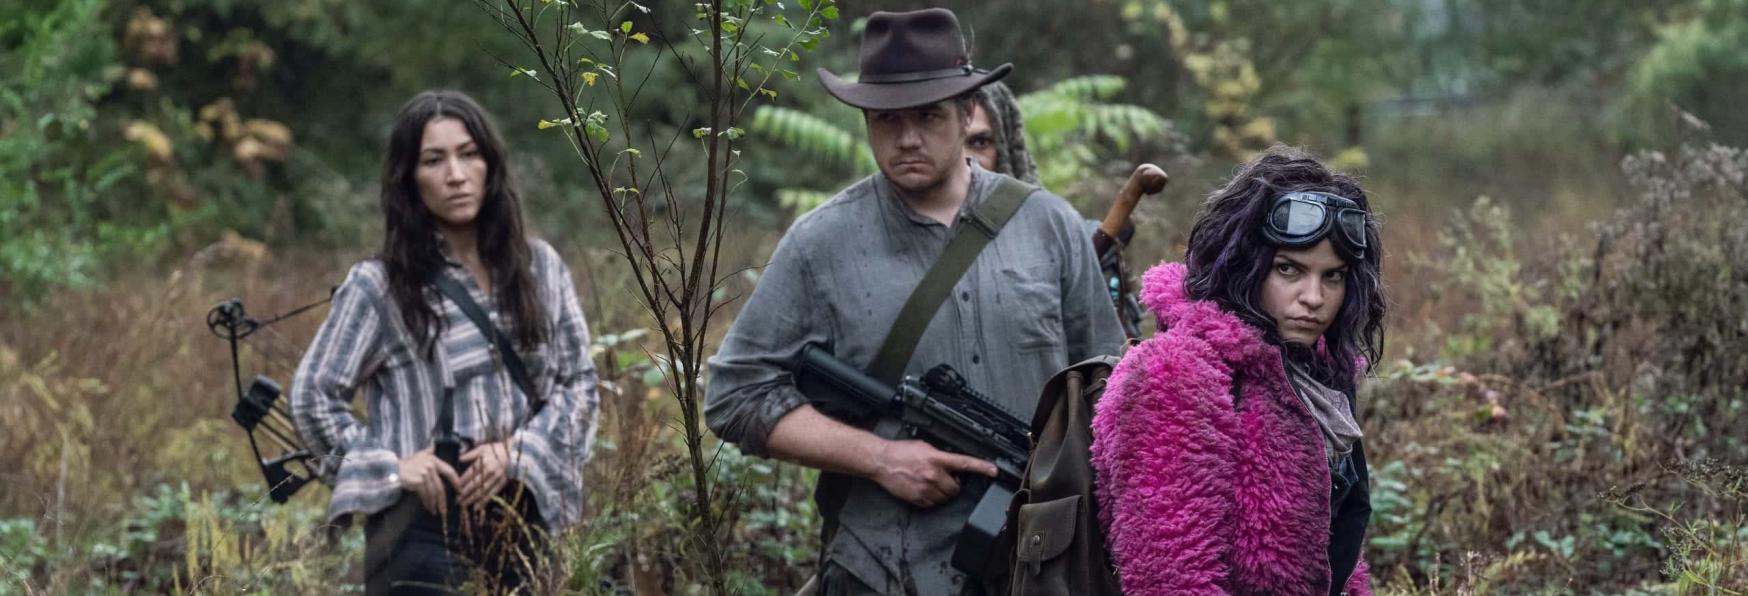 The Walking Dead 10: Chi sono quei Misteriosi soldati visti nel Finale di Stagione?